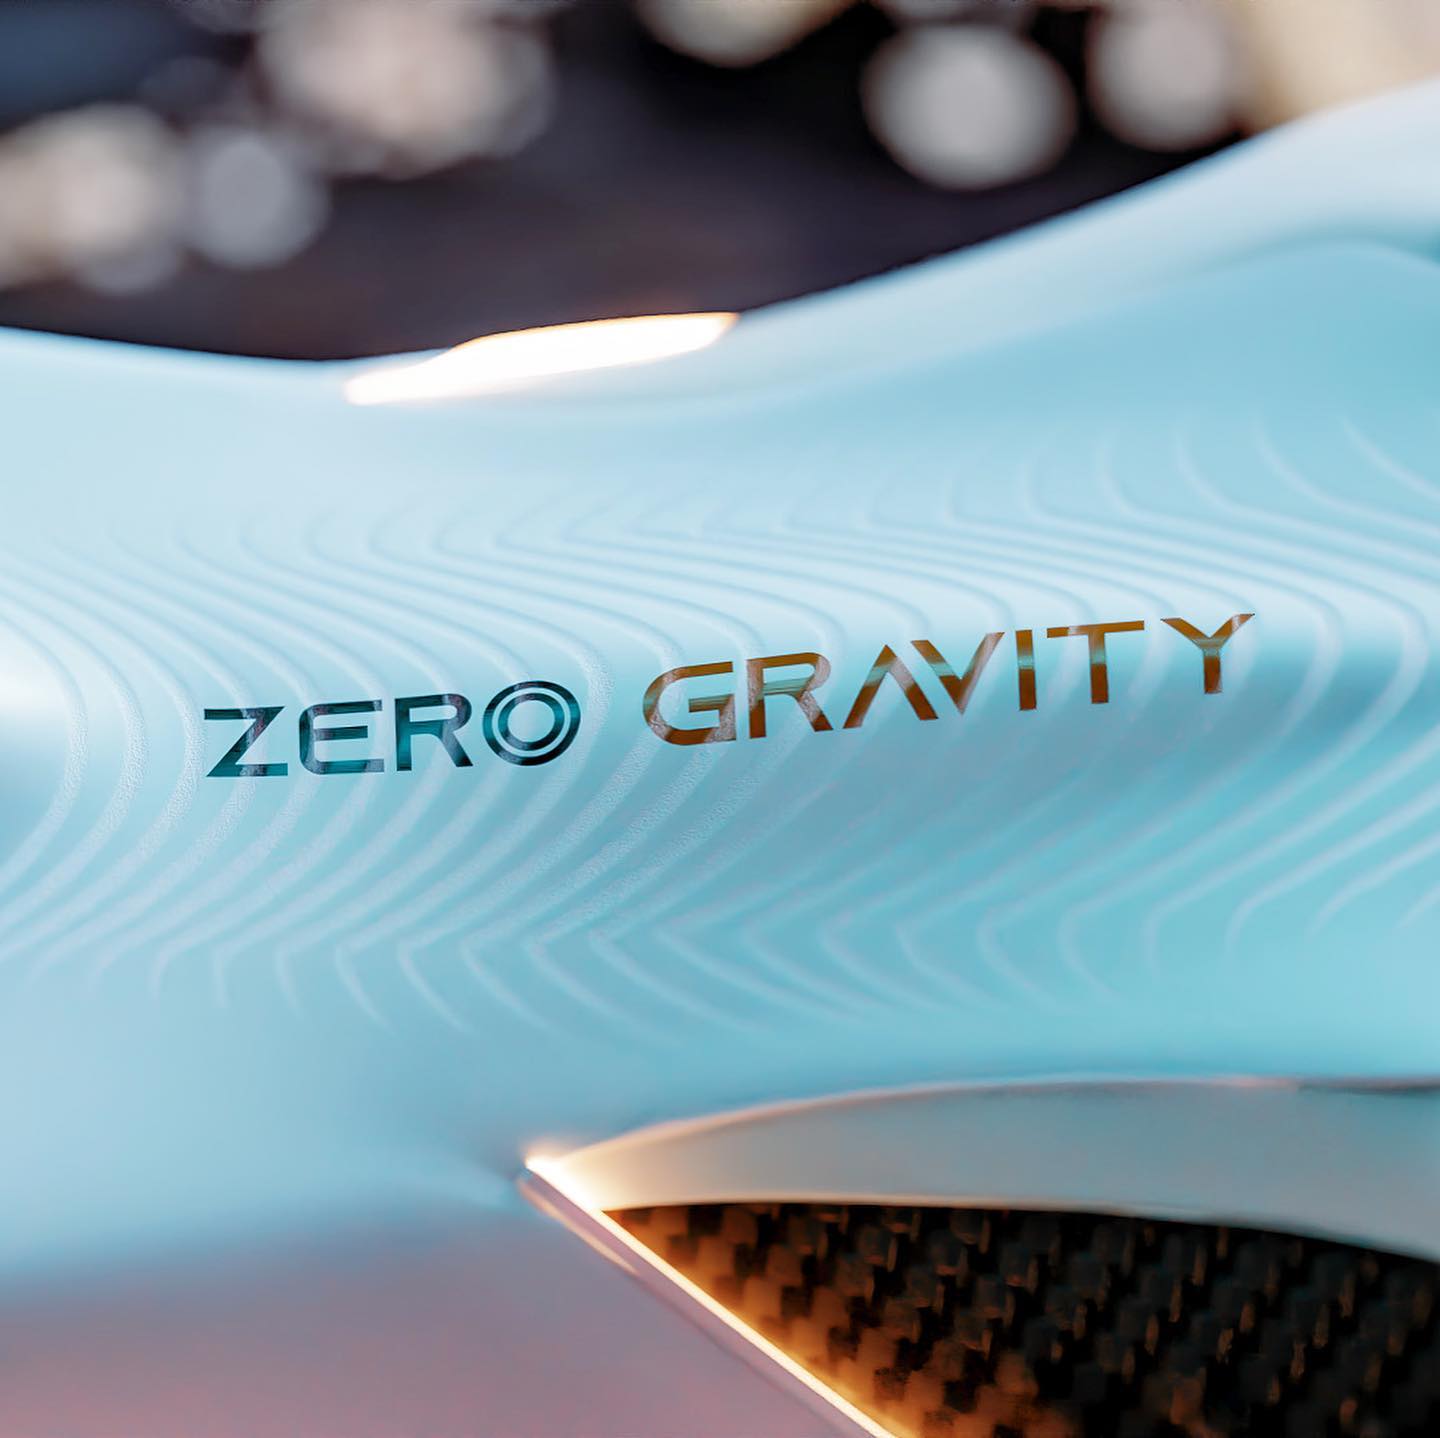 NASA Inspired Zero Gravity Shoe